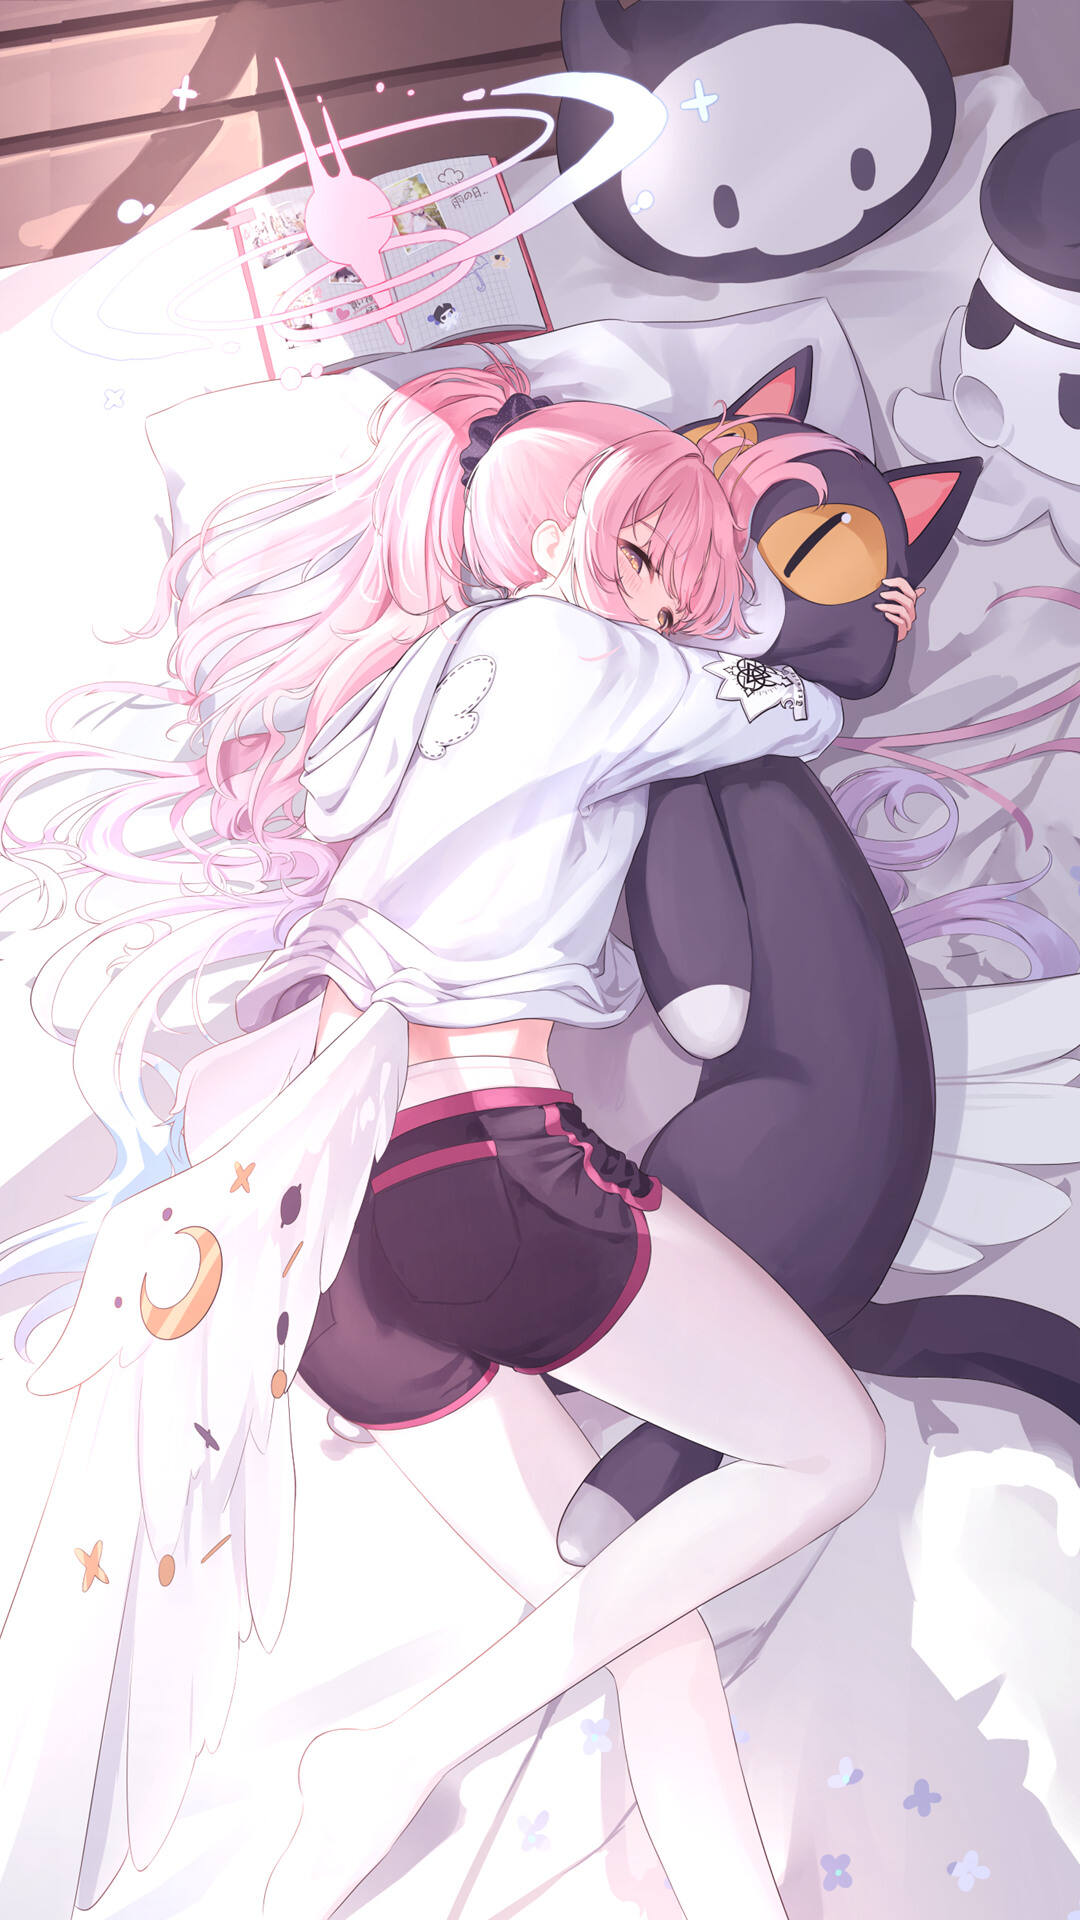 躺在床上，紧紧抱着可爱玩偶睡觉的粉色头发，短裤动漫美少女手机壁纸图片